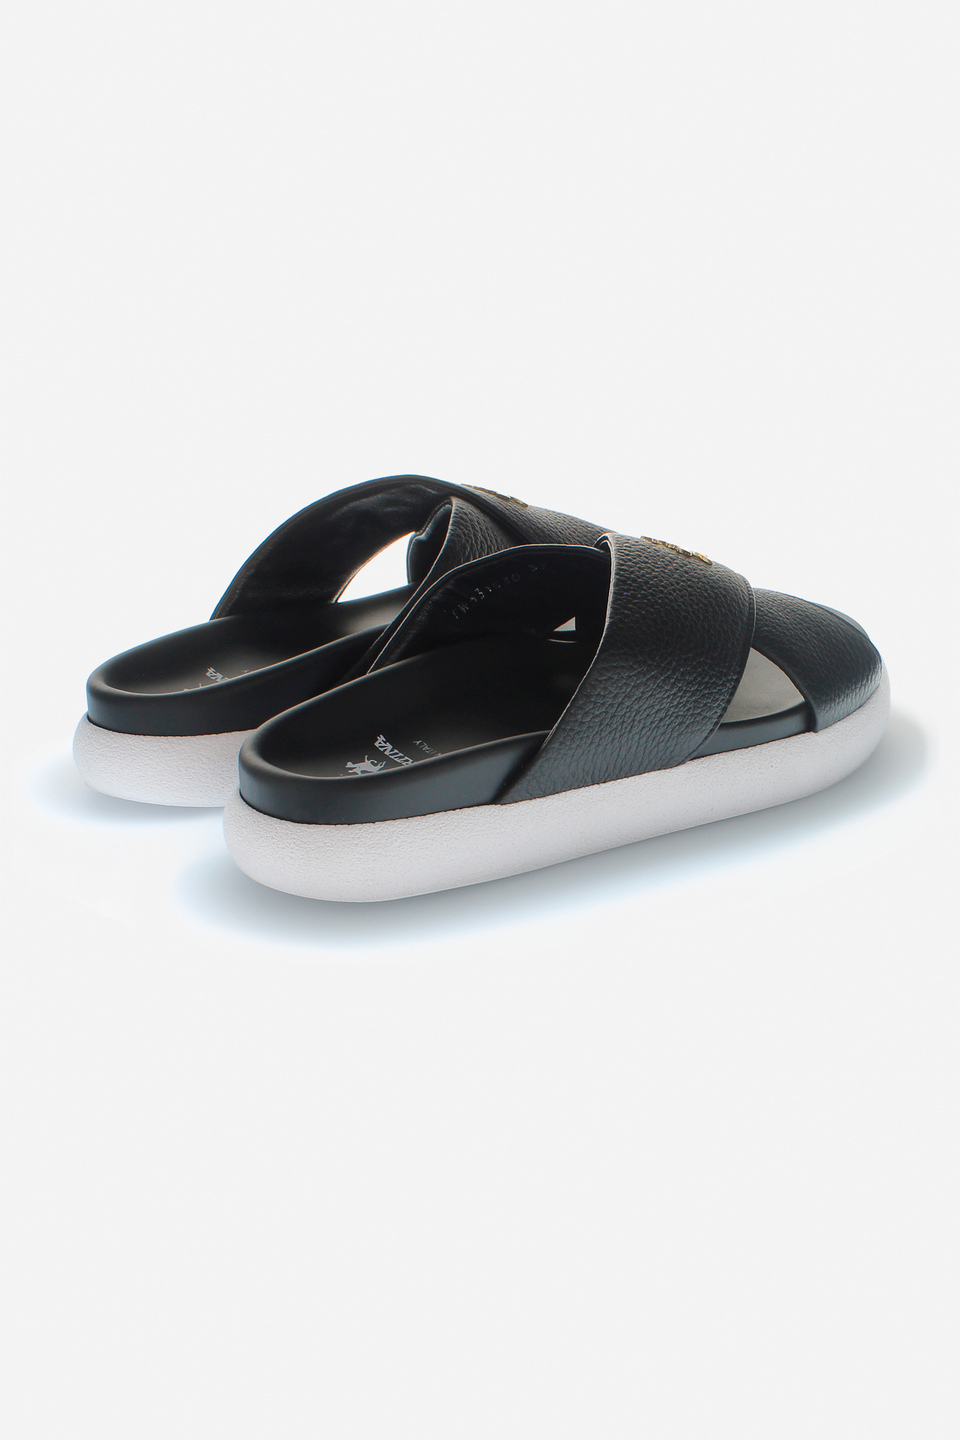 Leather sandals | La Martina - Official Online Shop